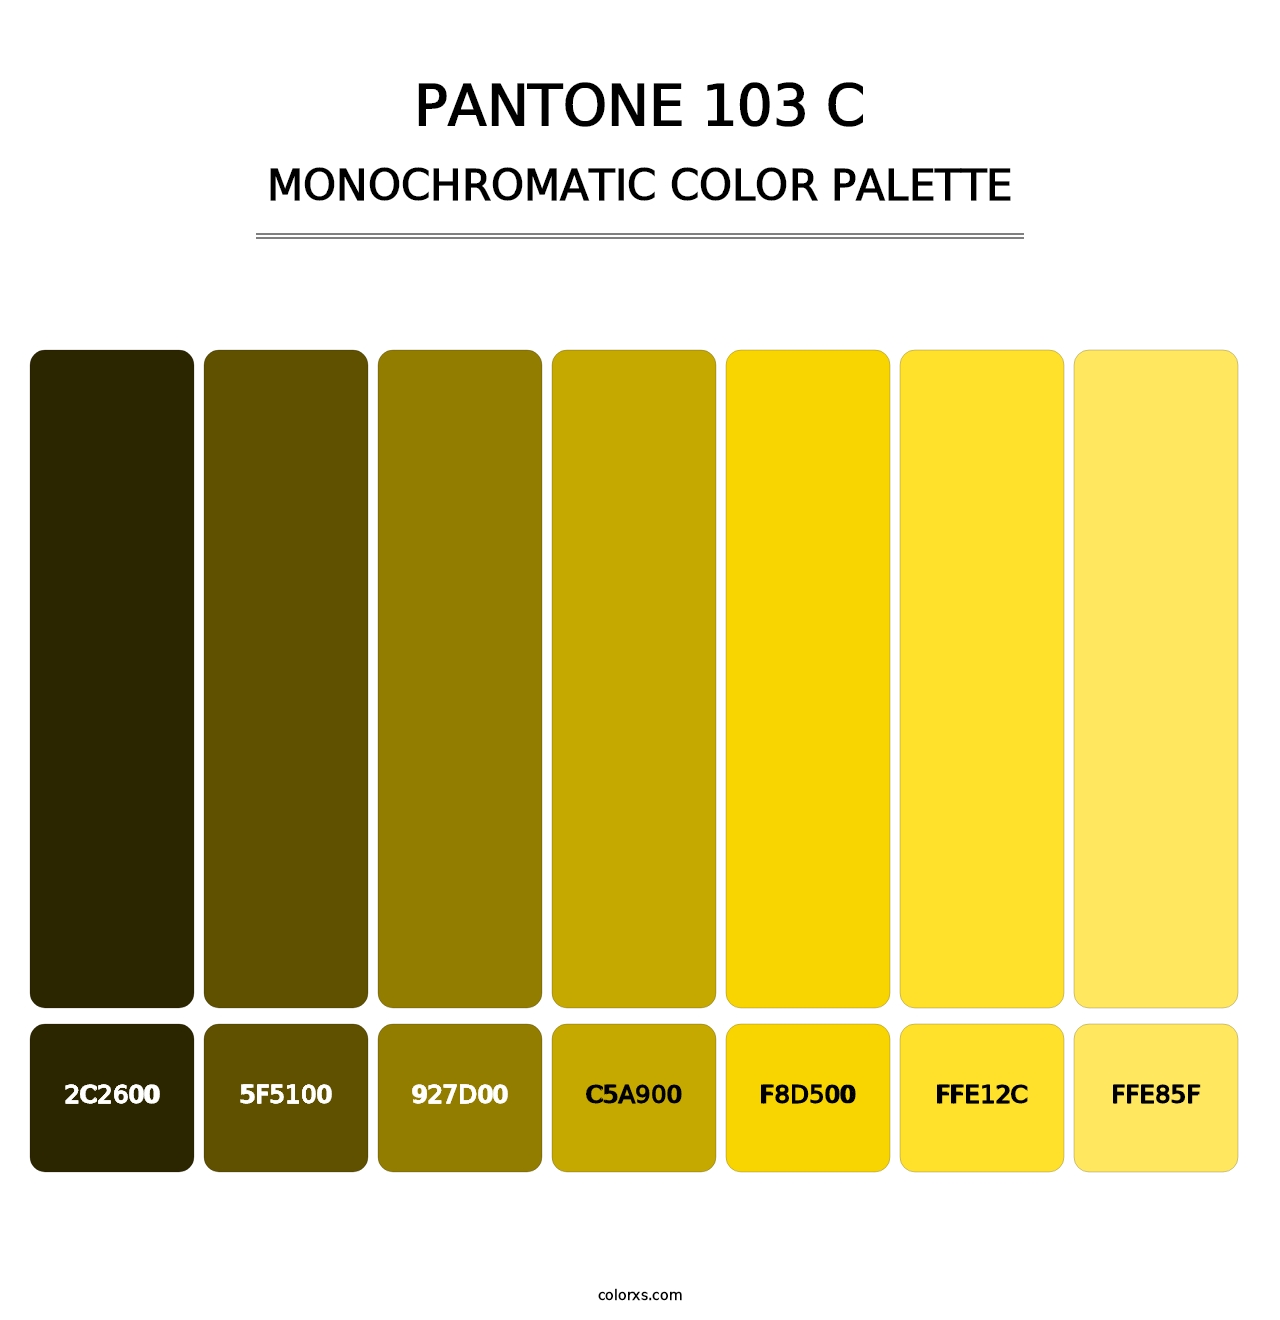 PANTONE 103 C - Monochromatic Color Palette